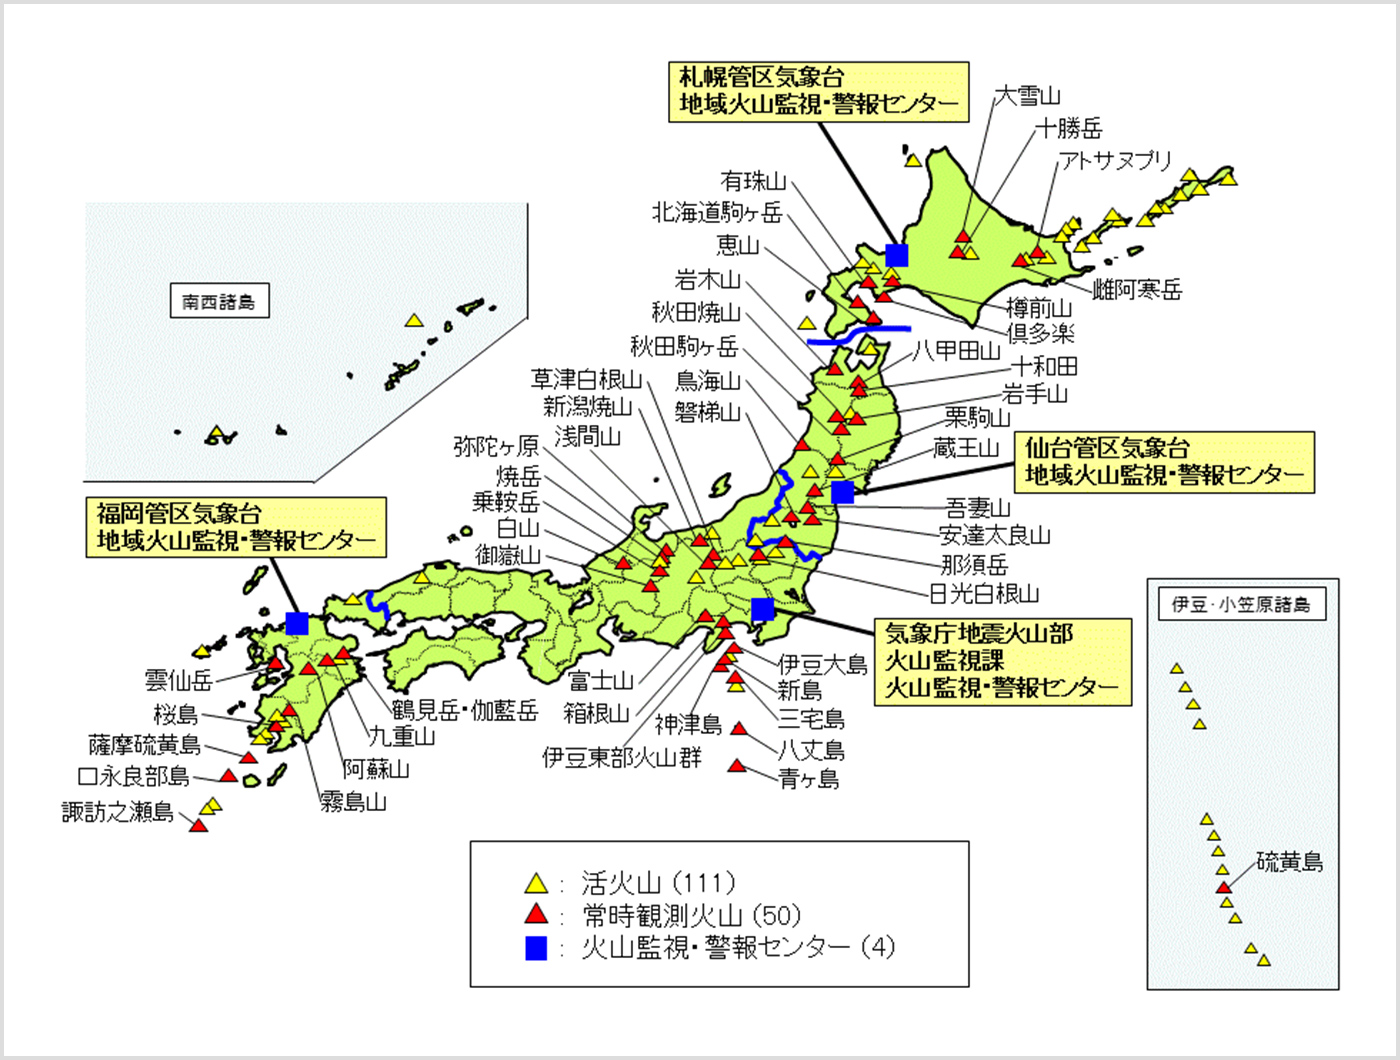 図: 活火山111件、常時監視火山50件、火山監視・警報センター4件の分布